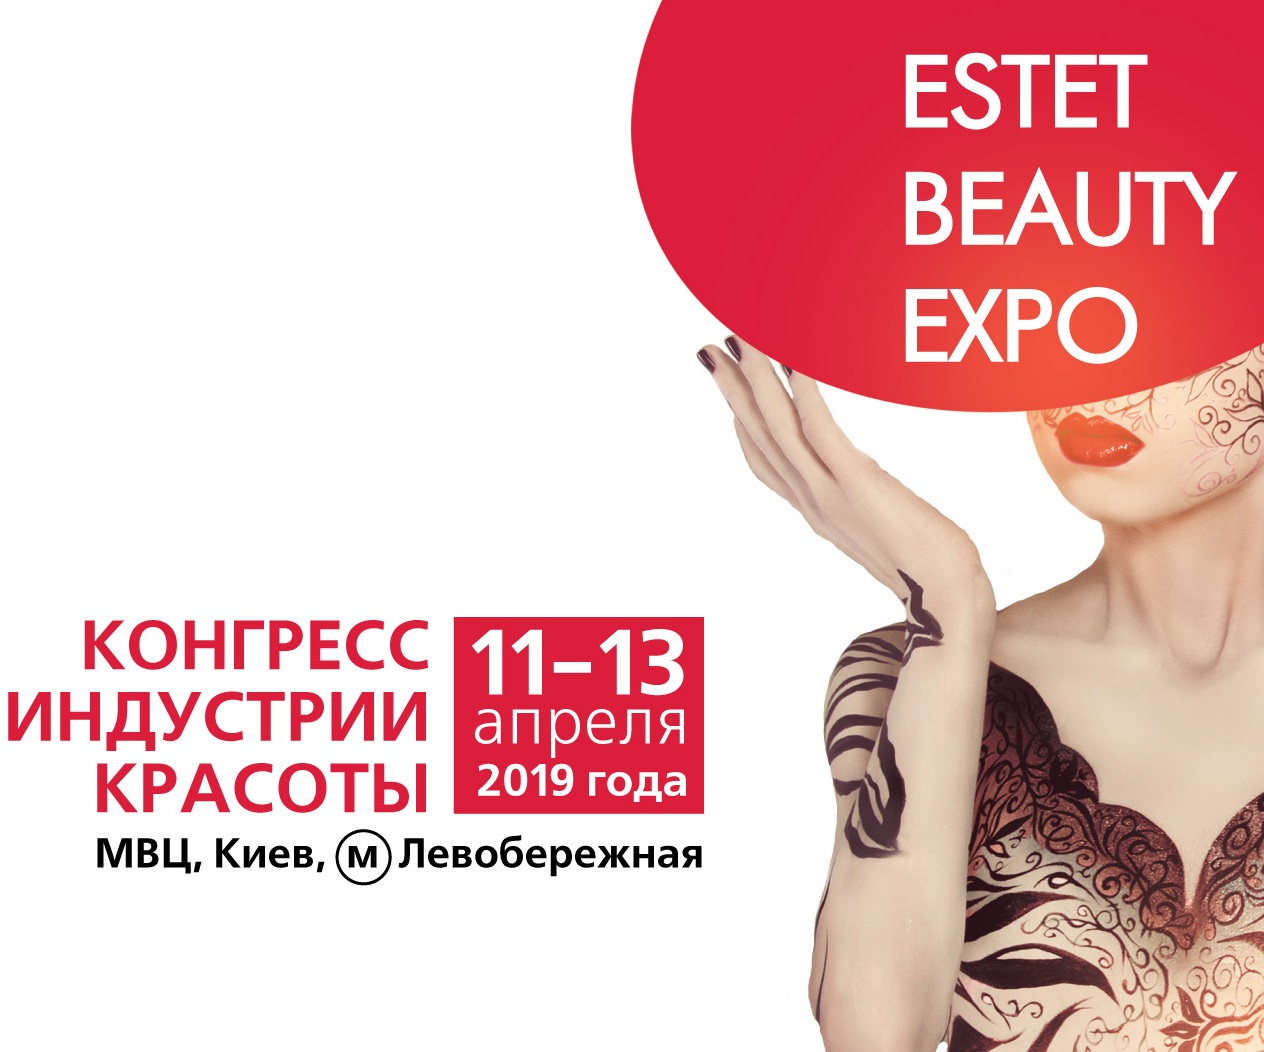 Участие в выставке Estet Beauty Expo 2019